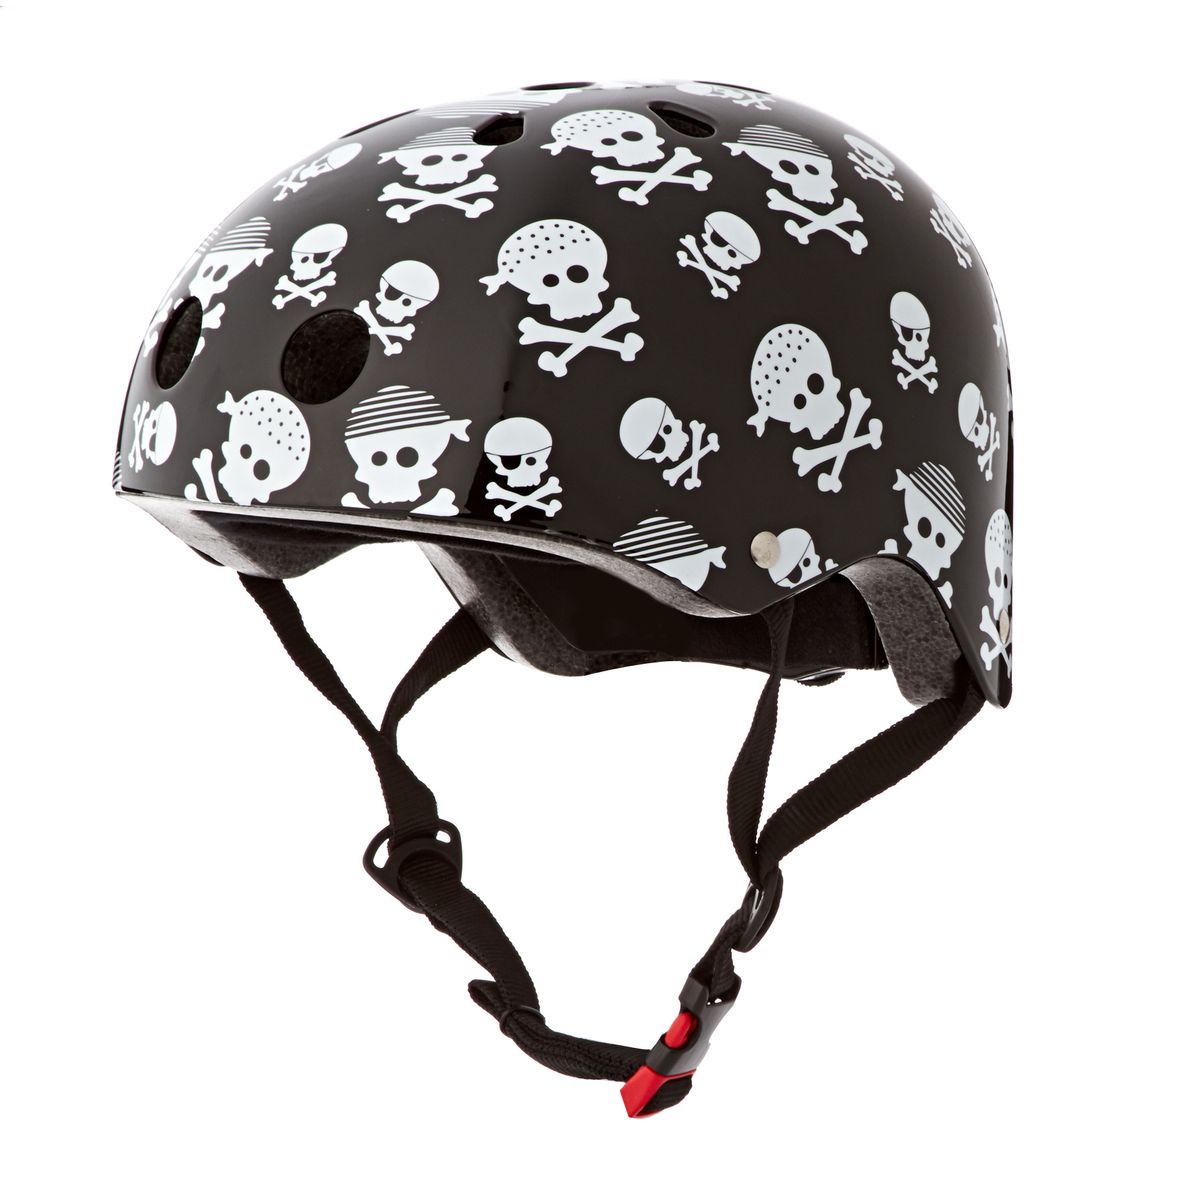 kiddimoto-helmets-kiddimoto-kids-helmet-helmet-skullz